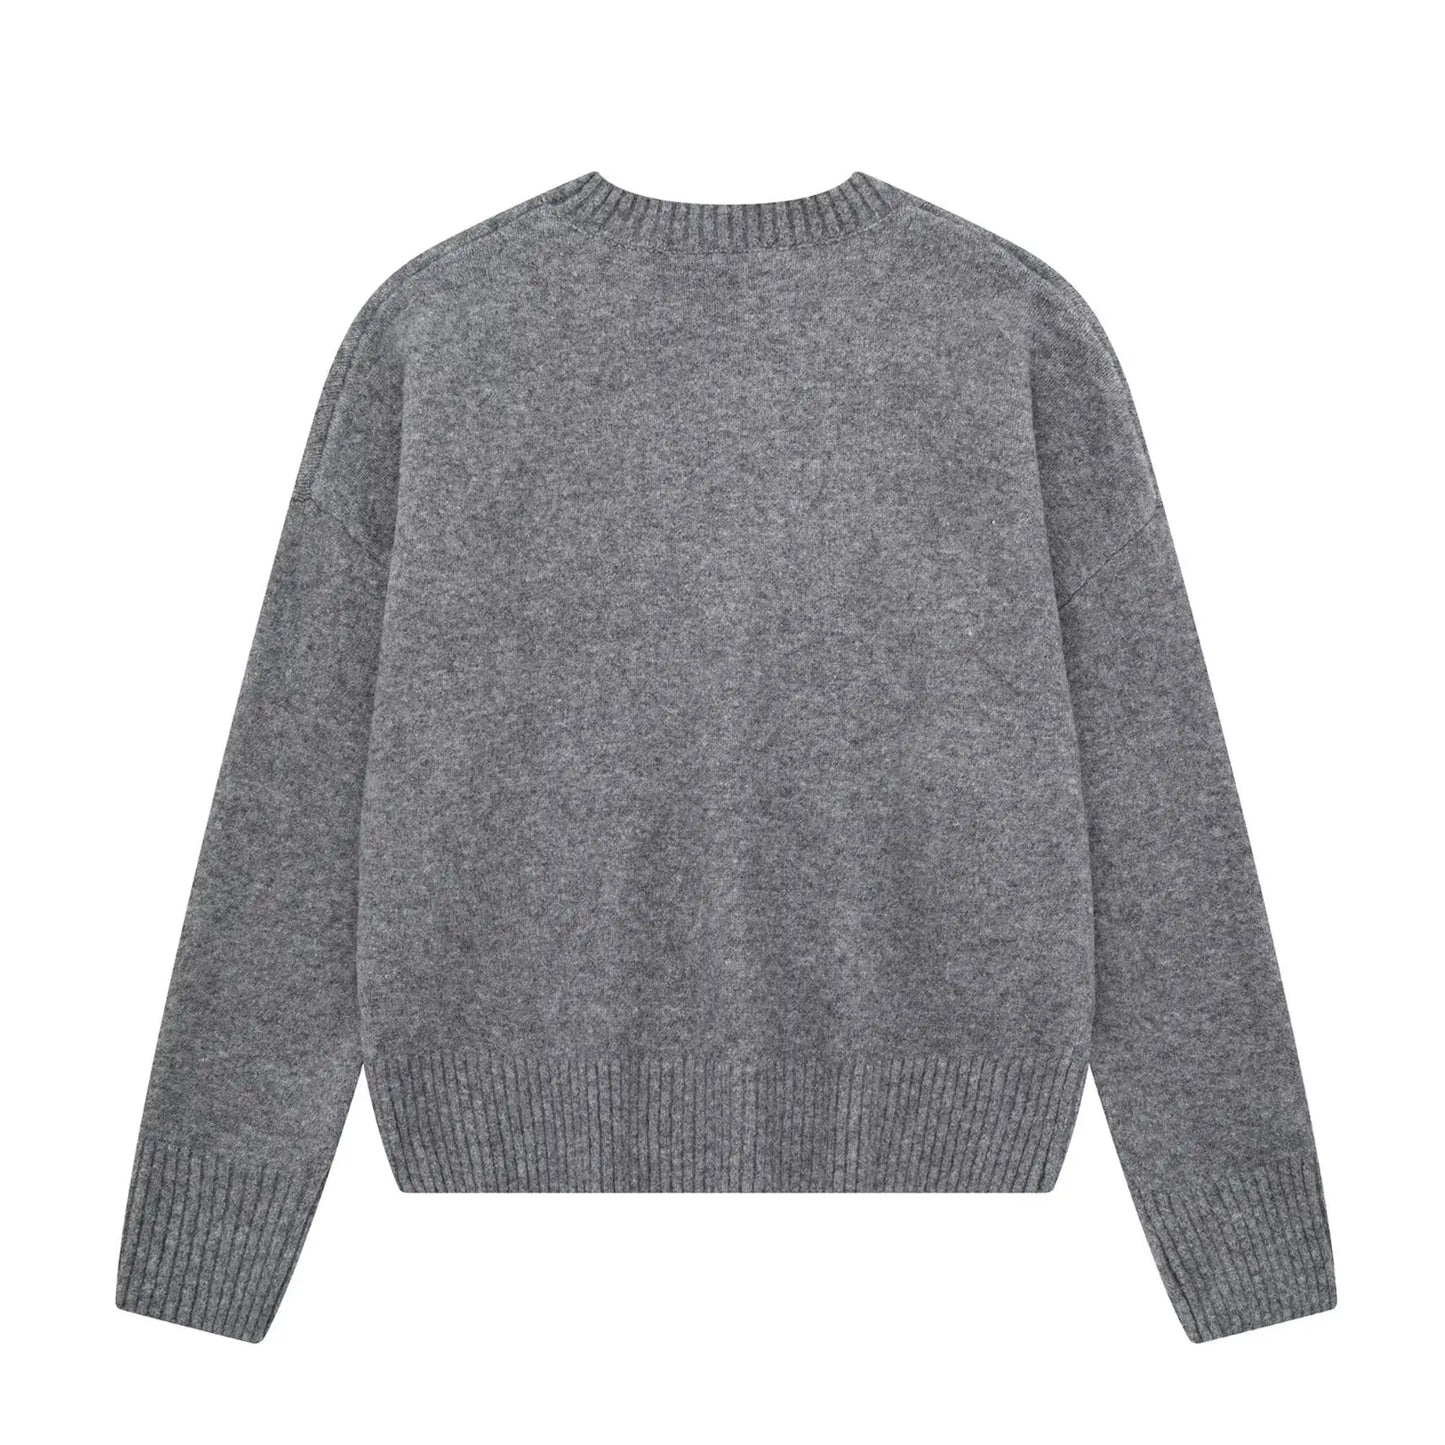 Gray pullover